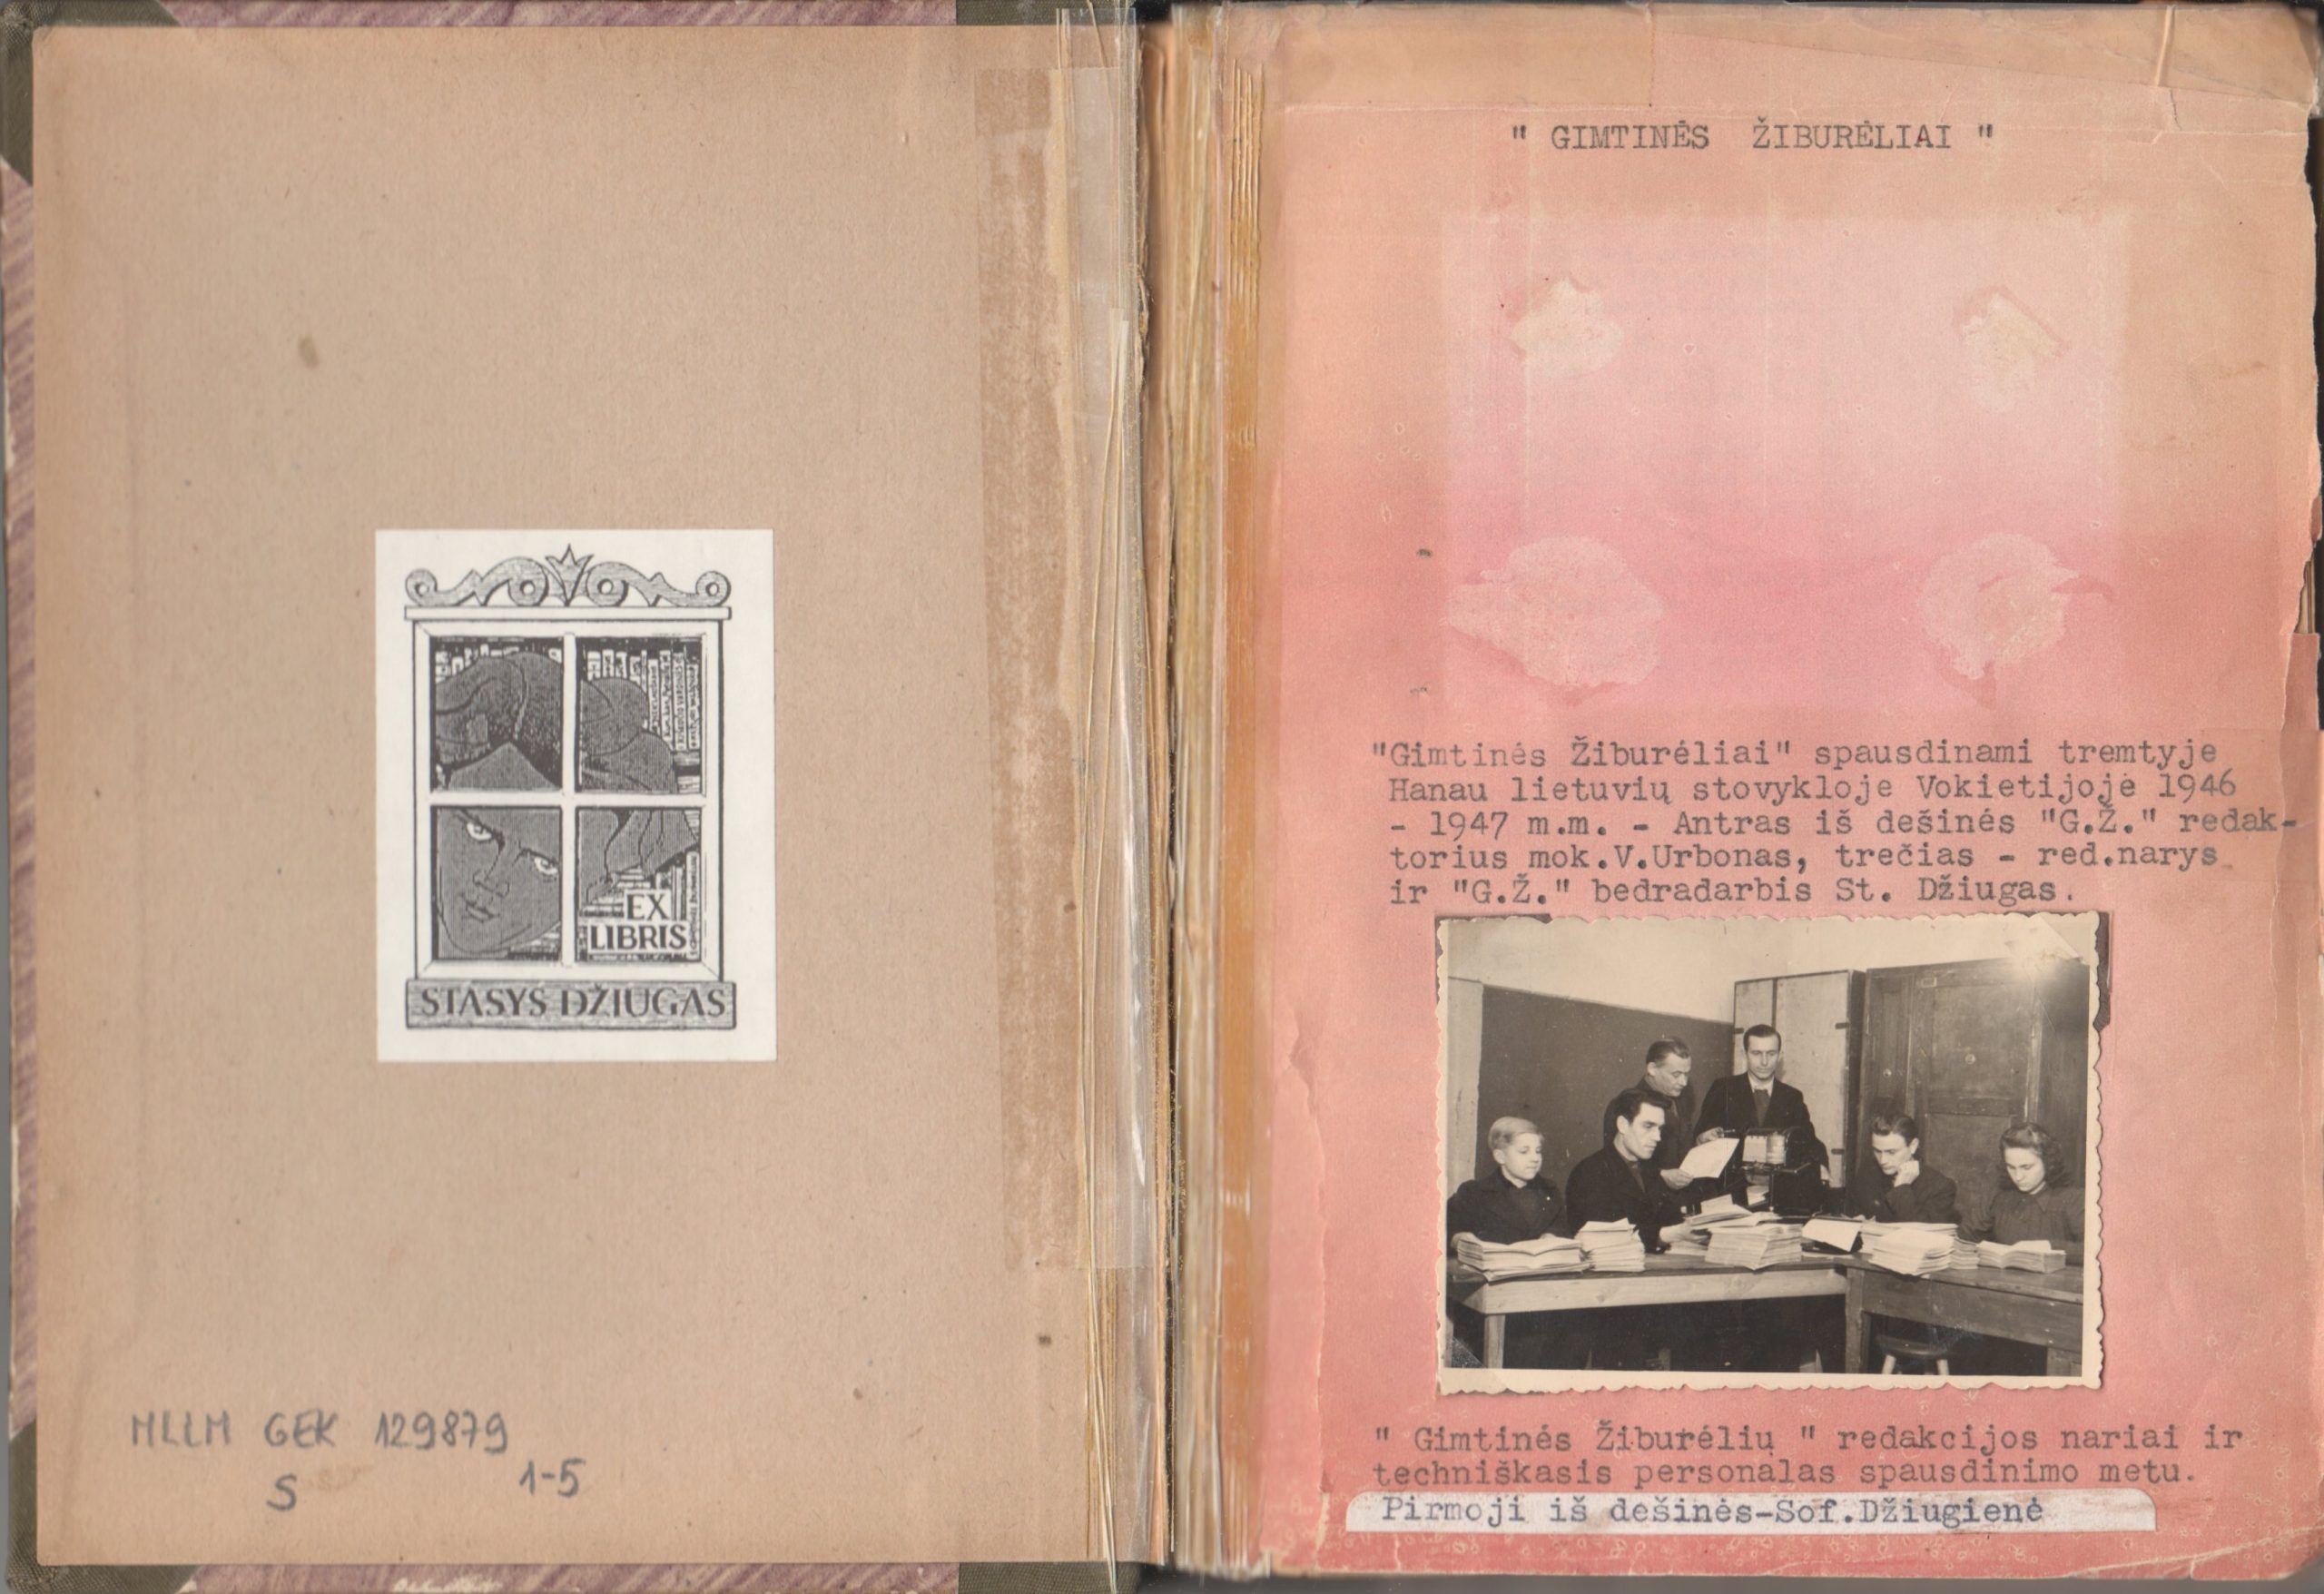 Žurnalo „Gimtinės žiburėliai” komplektas. Hanau. 1946 – 1947 m.